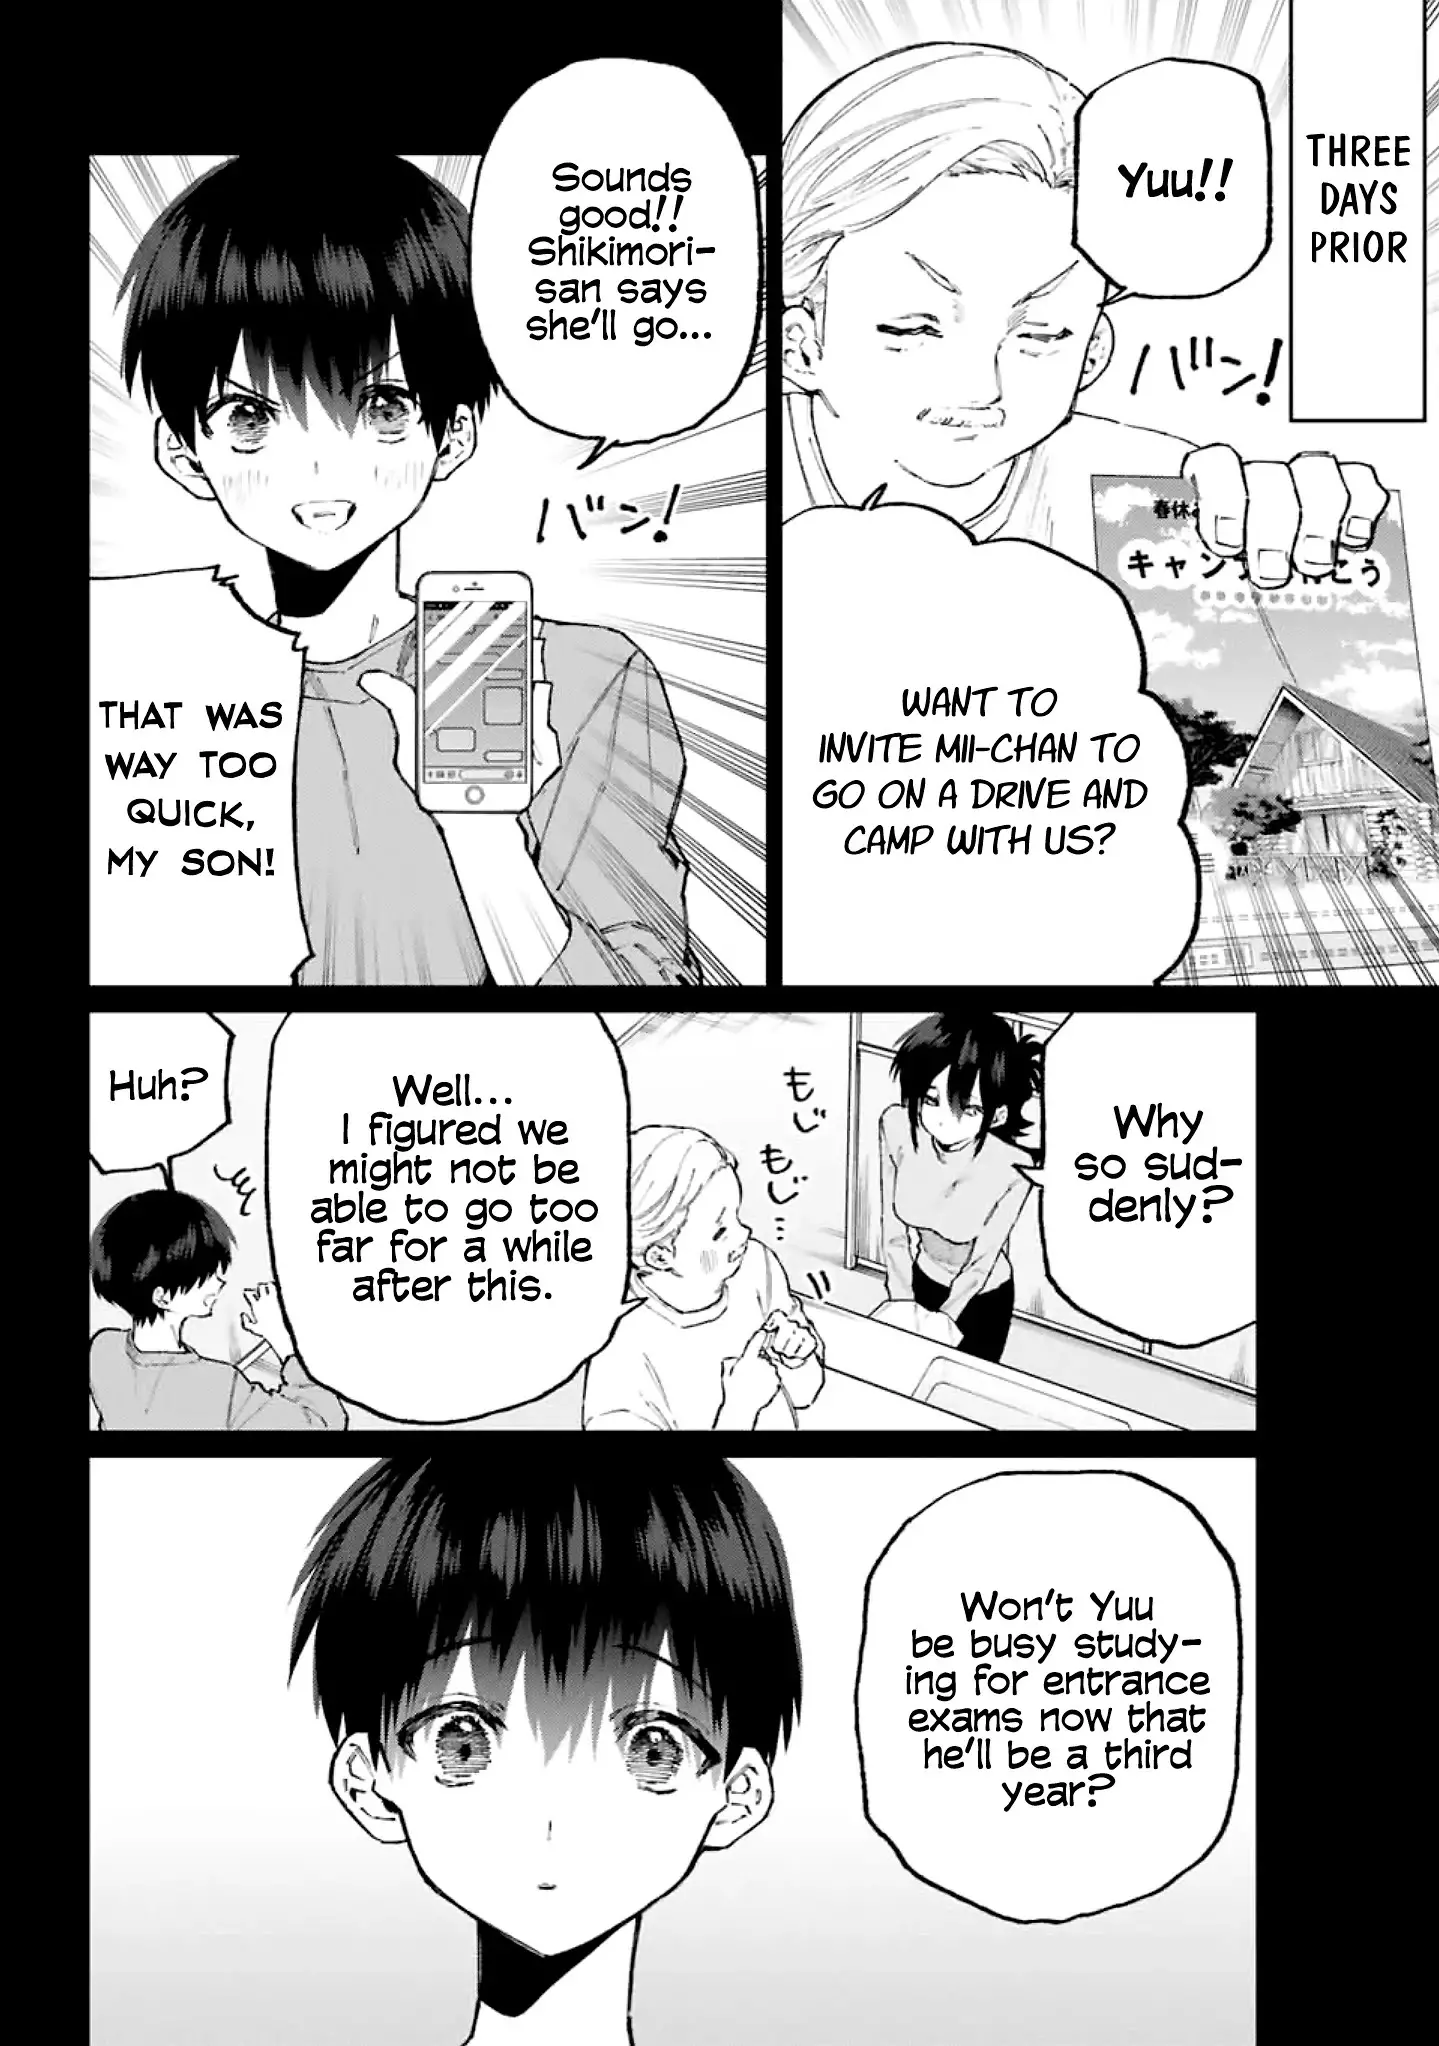 Shikimori's Not Just A Cutie - 118 page 3